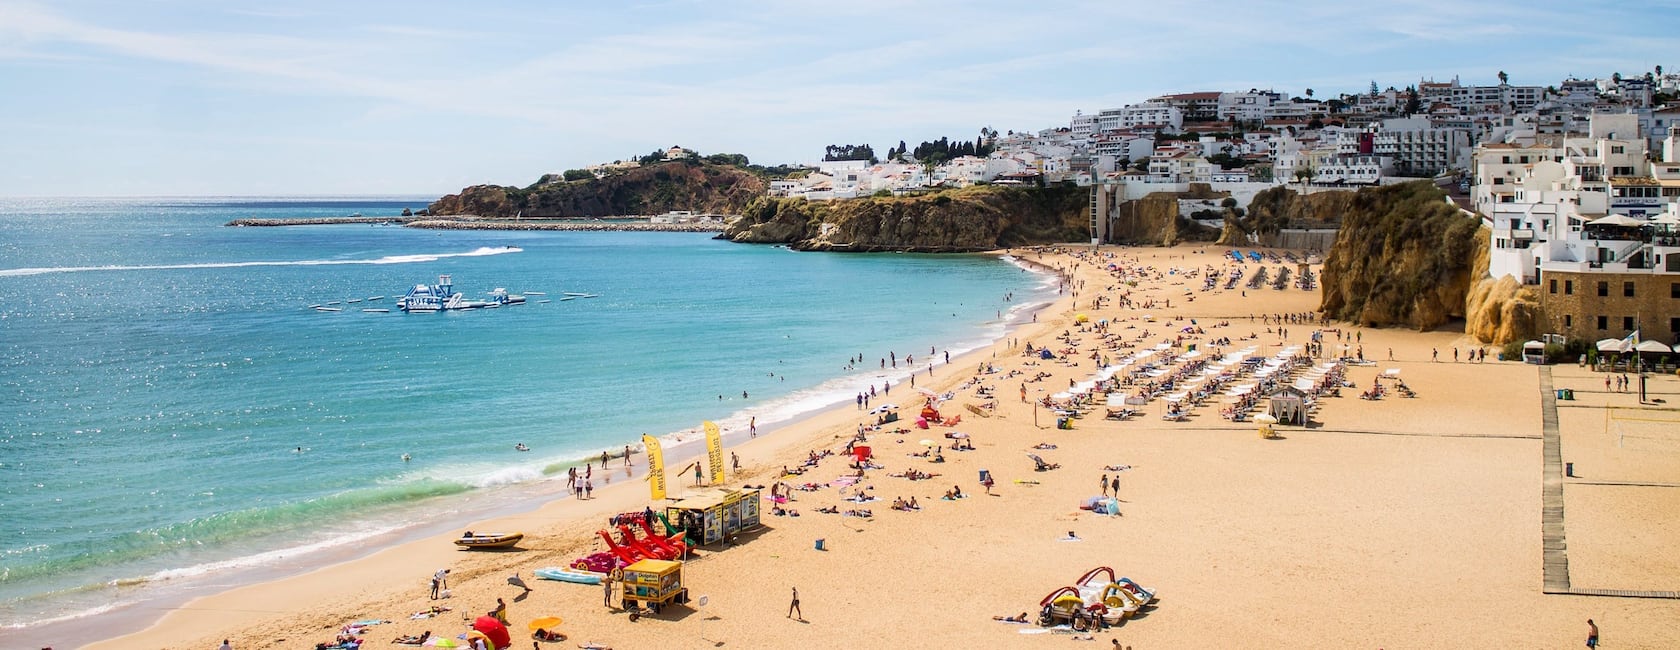 Faro Bölgesi konumunda kiralık tatil yerleri